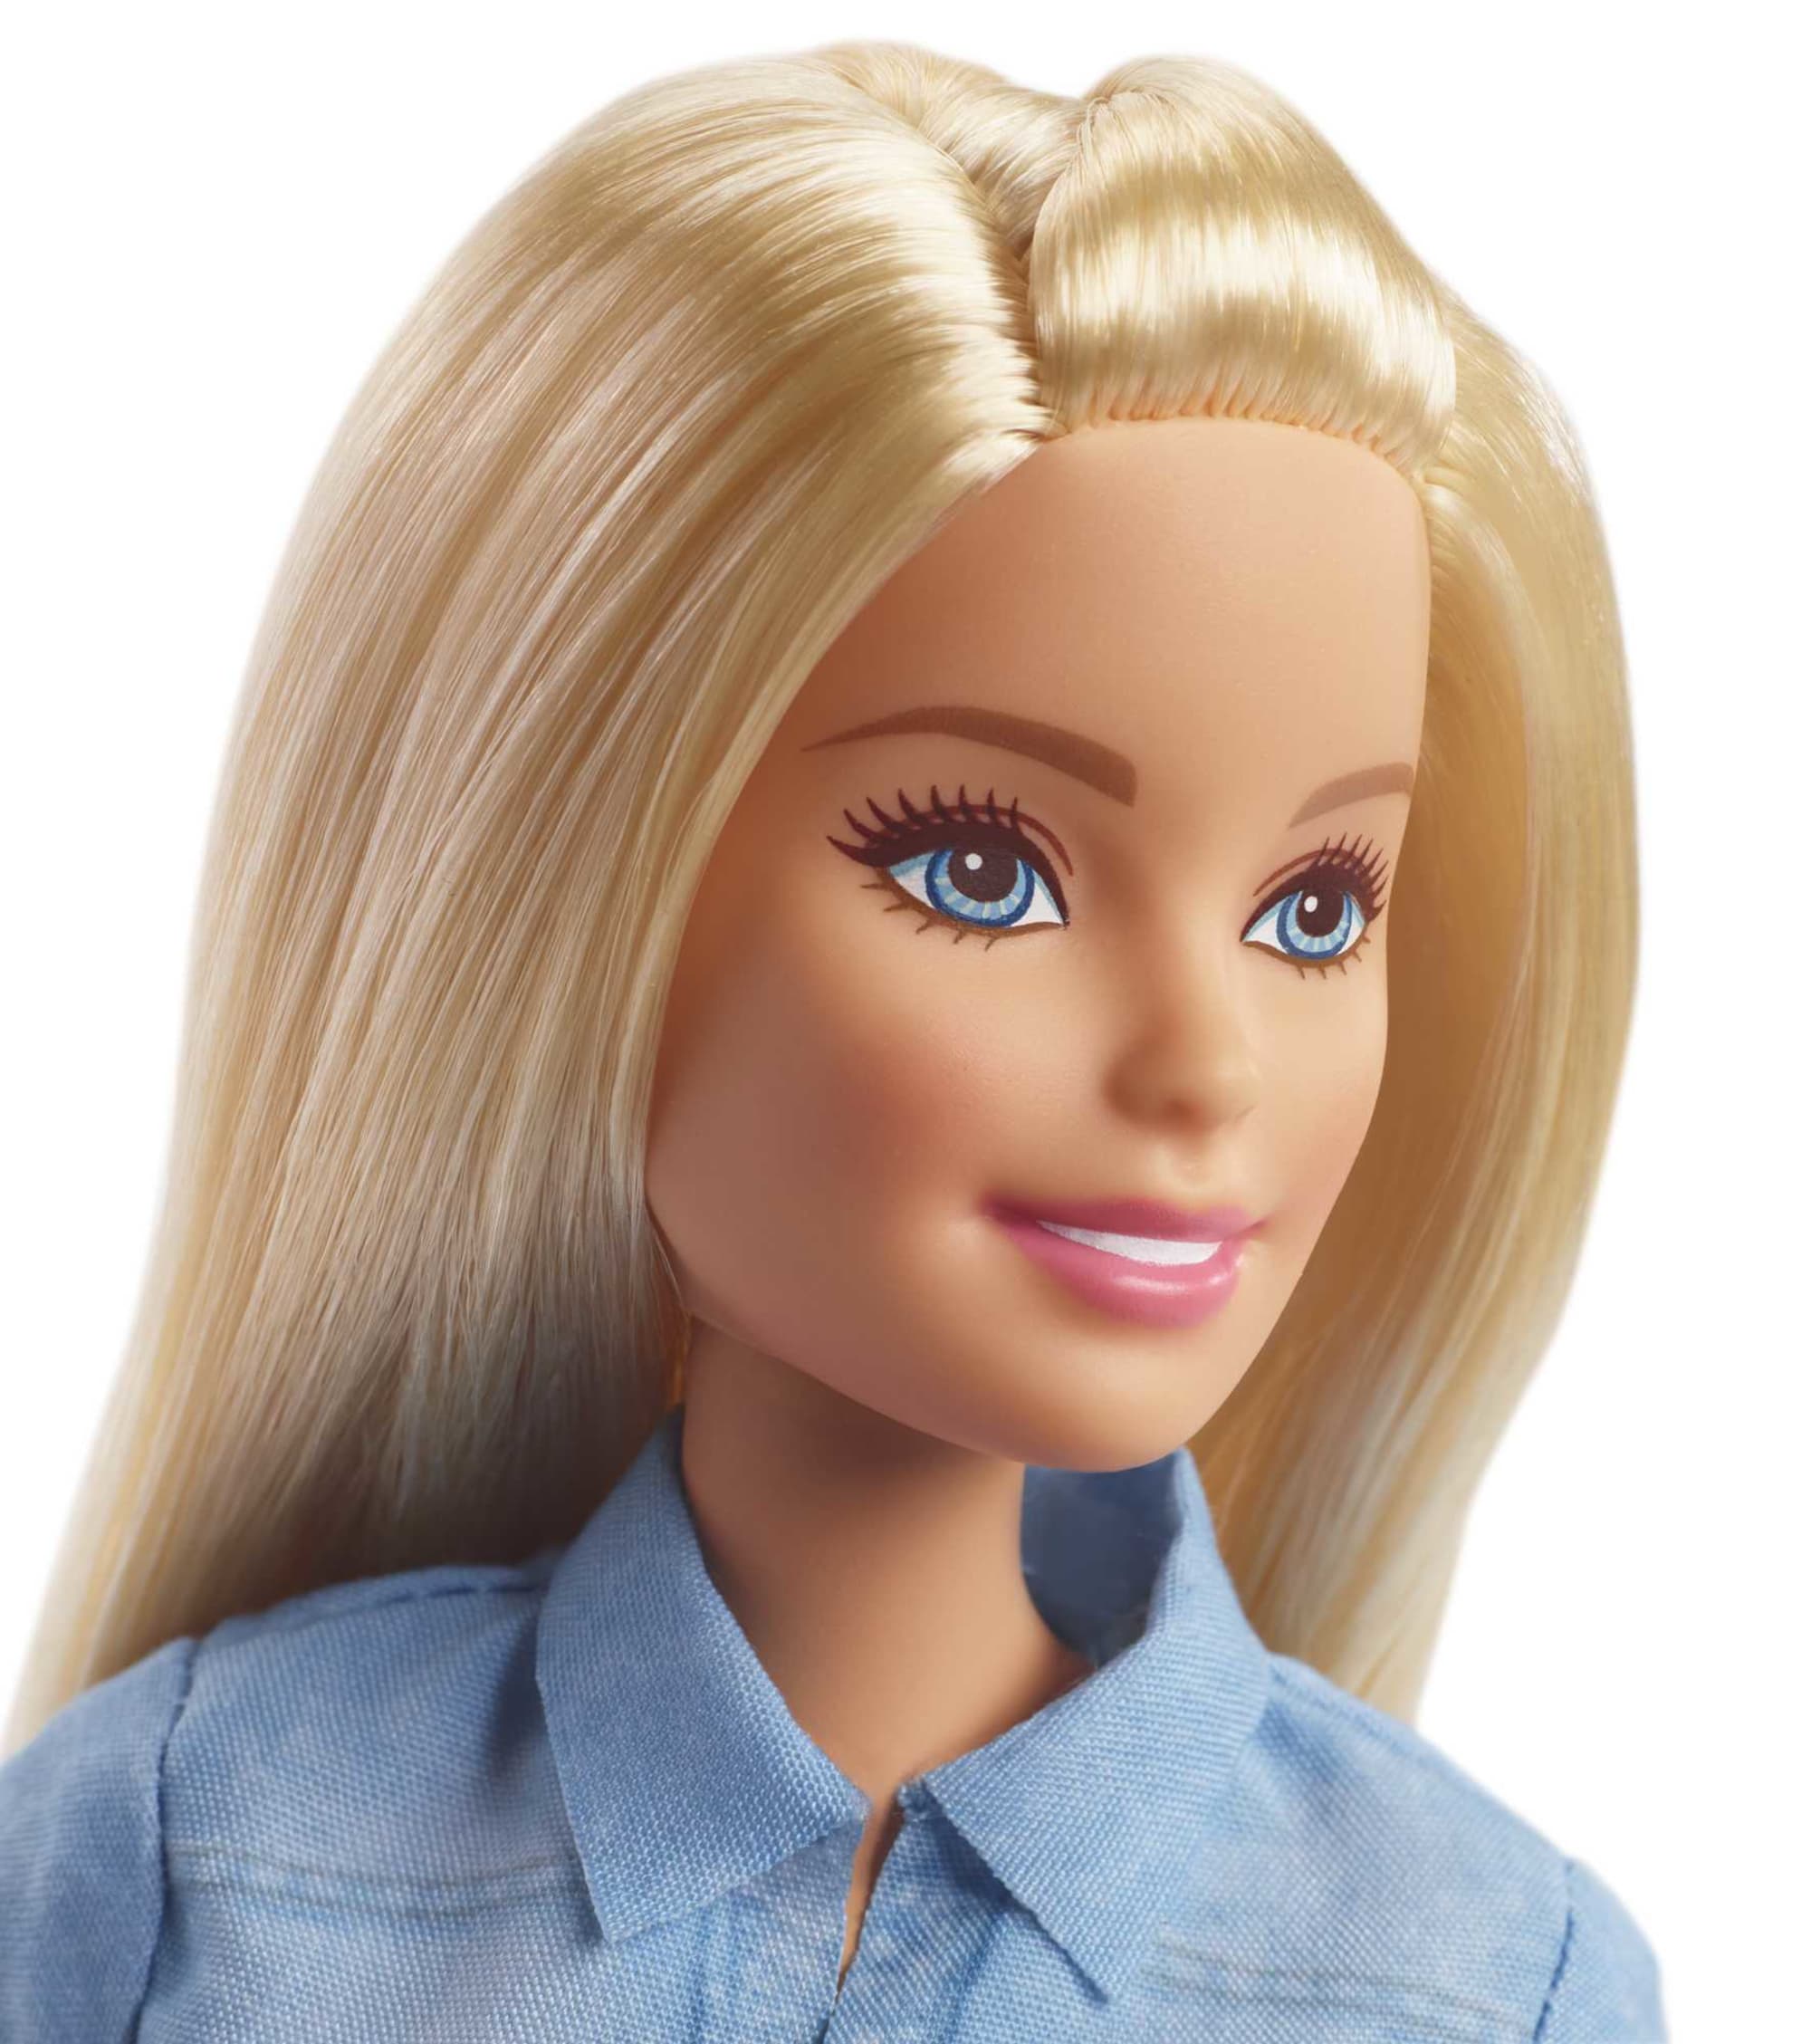 accessoires pour Barbie dans leur boîte d'origine jardinage - Barbie Mattel  - Label Emmaüs